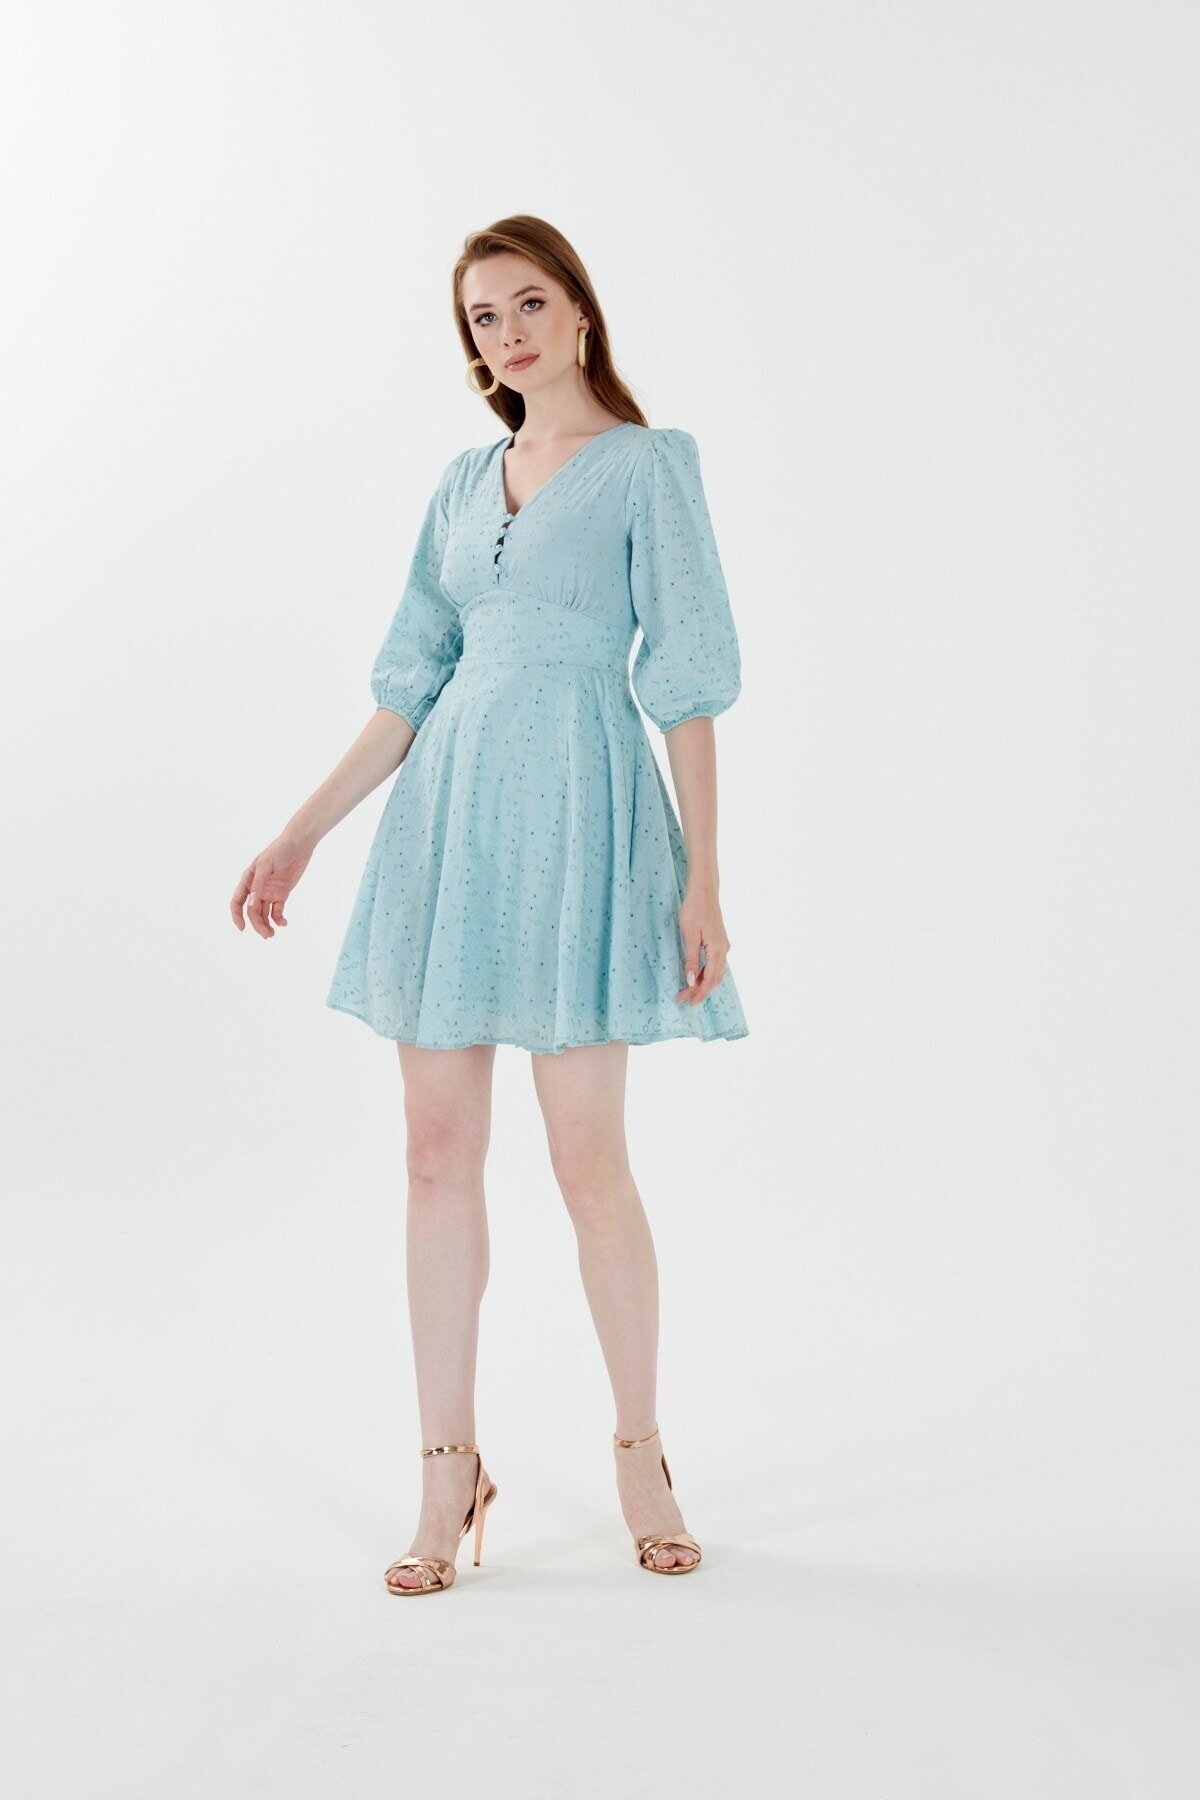 Mylace Mavi Truvakar Kol Belden Oturan Şık Mini Elbise